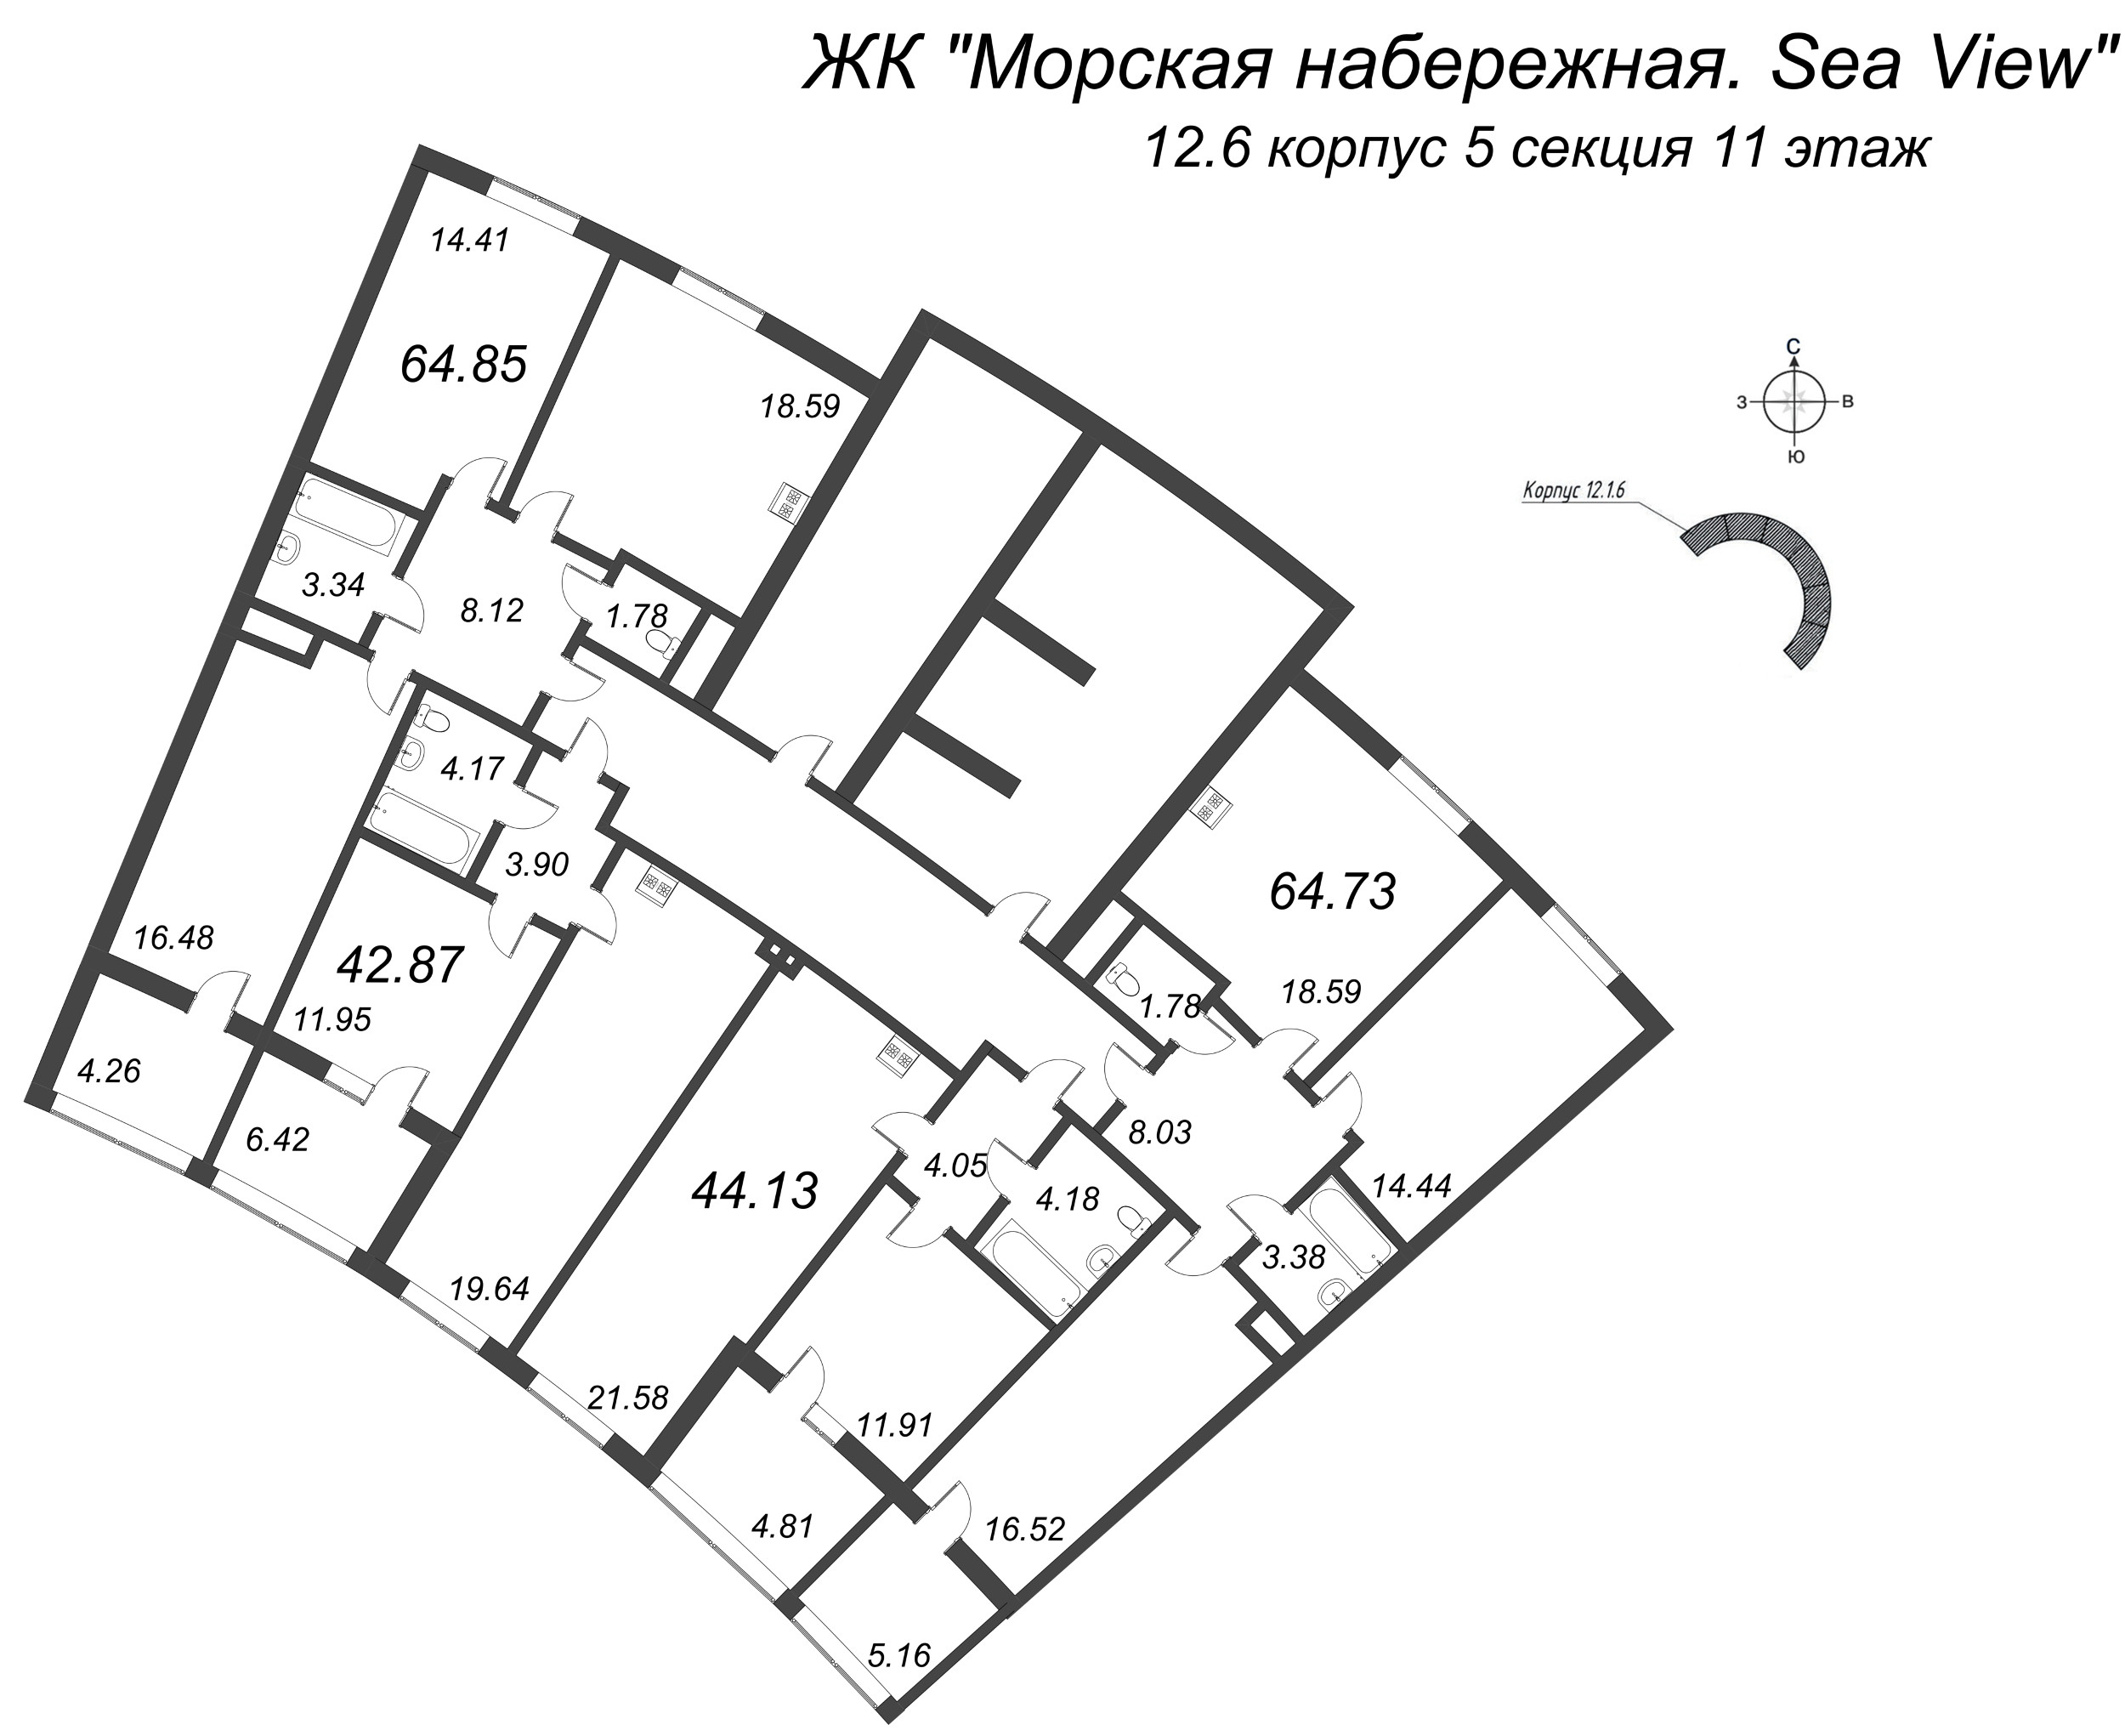 3-комнатная (Евро) квартира, 64.85 м² в ЖК "Морская набережная. SeaView" - планировка этажа